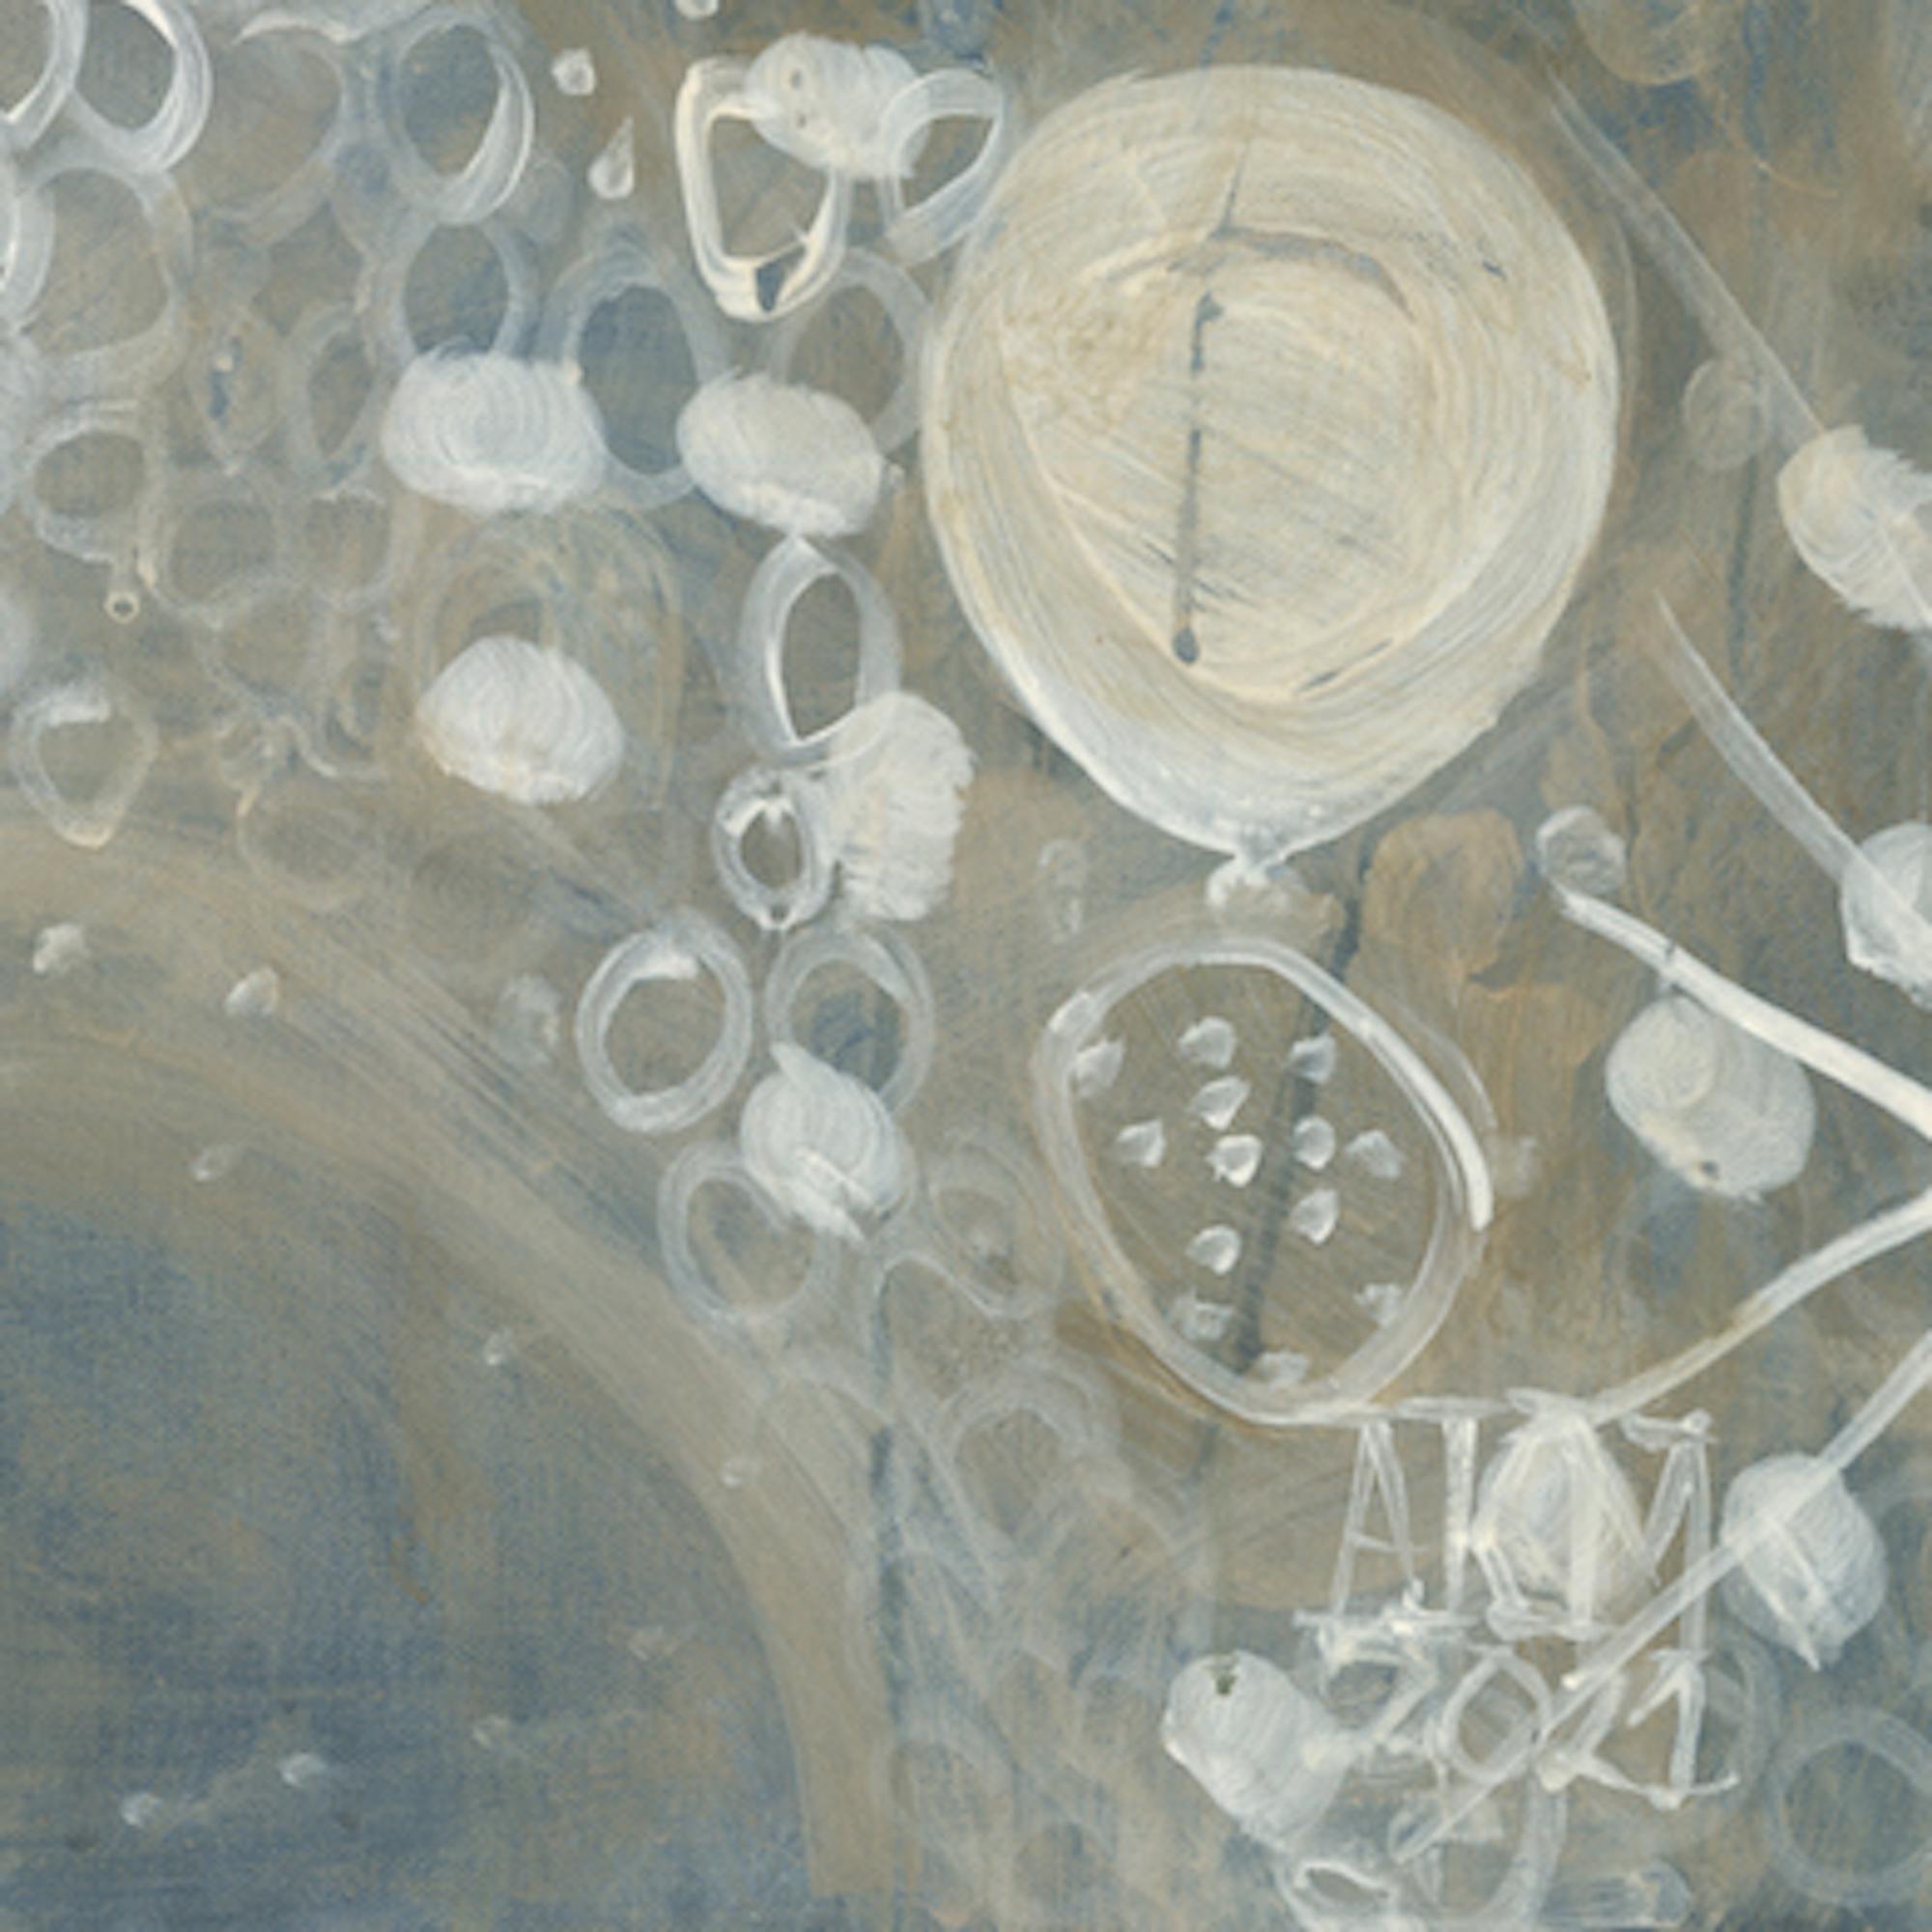 Abstraktes Celestial-Gemälde in Mischtechnik auf Leinwand Blau, Gold, Weiß (Schwarz), Landscape Painting, von Alex K. Mason